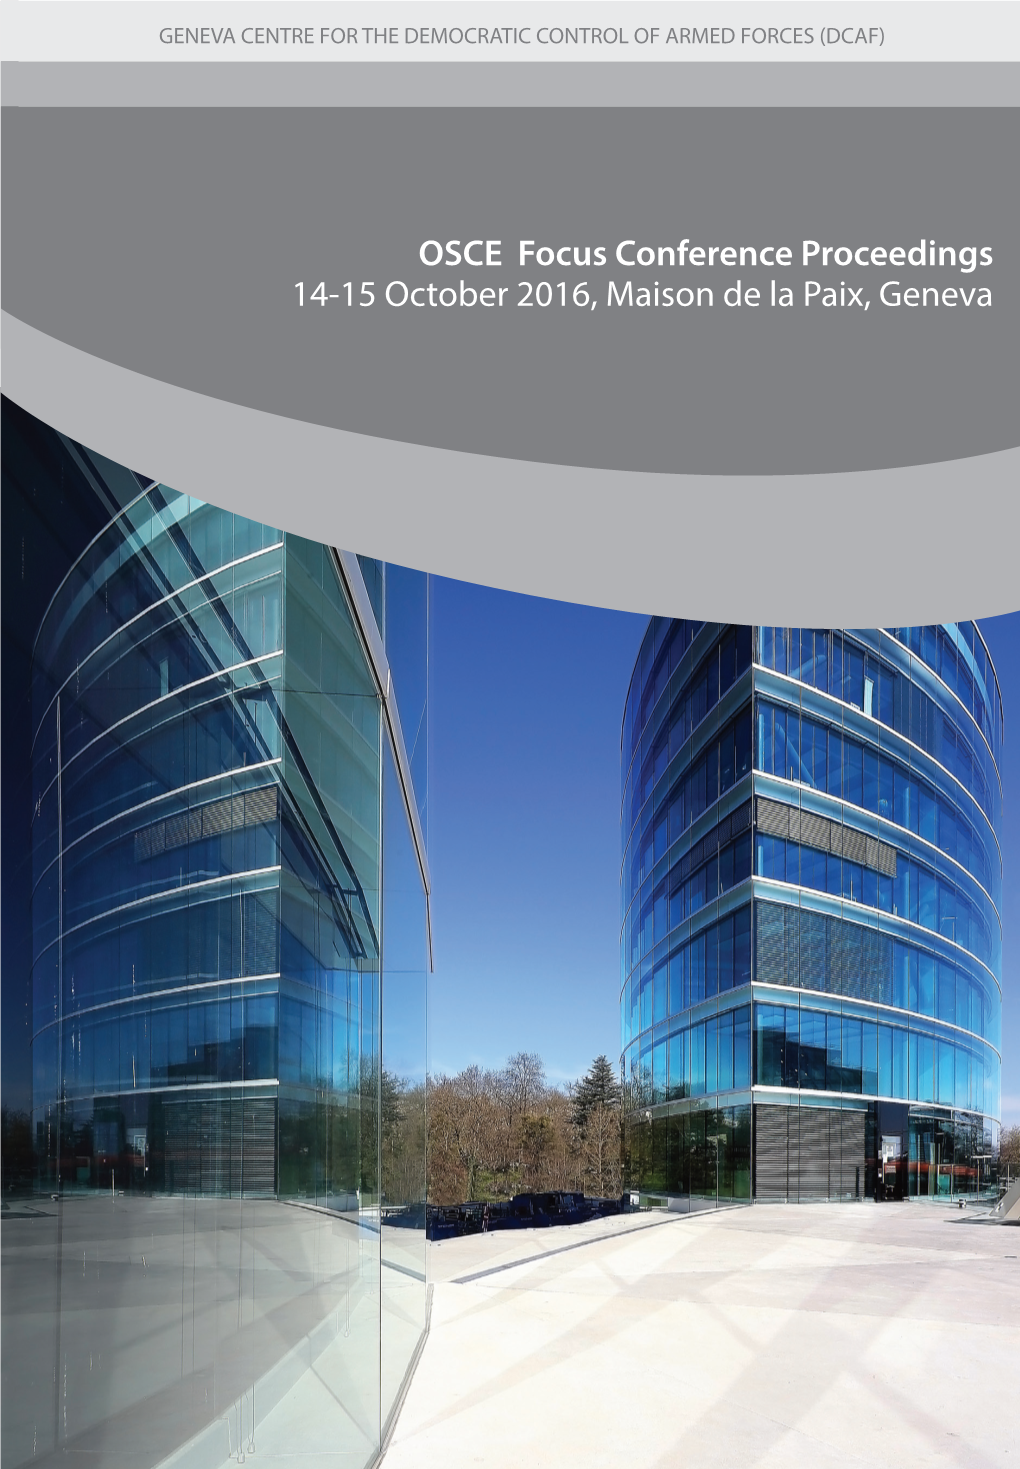 OSCE Focus Conference Proceedings, 14-15 October 2016, Maison De La Paix, Geneva